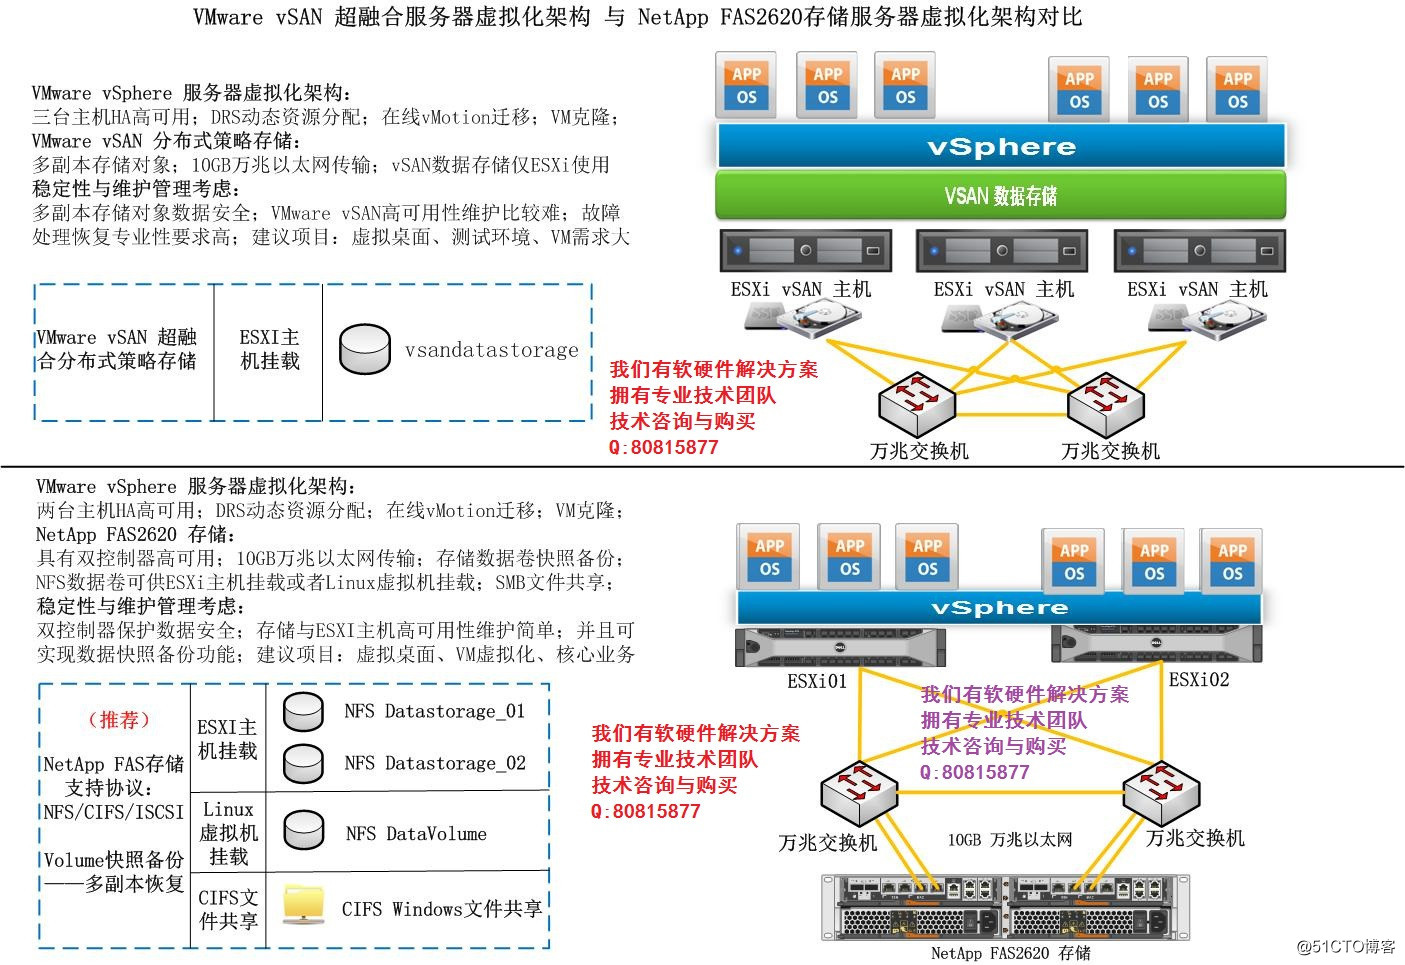 VMware vSAN超融合虛擬化架構與NetApp FAS2620存儲服務器虛擬化架構對比